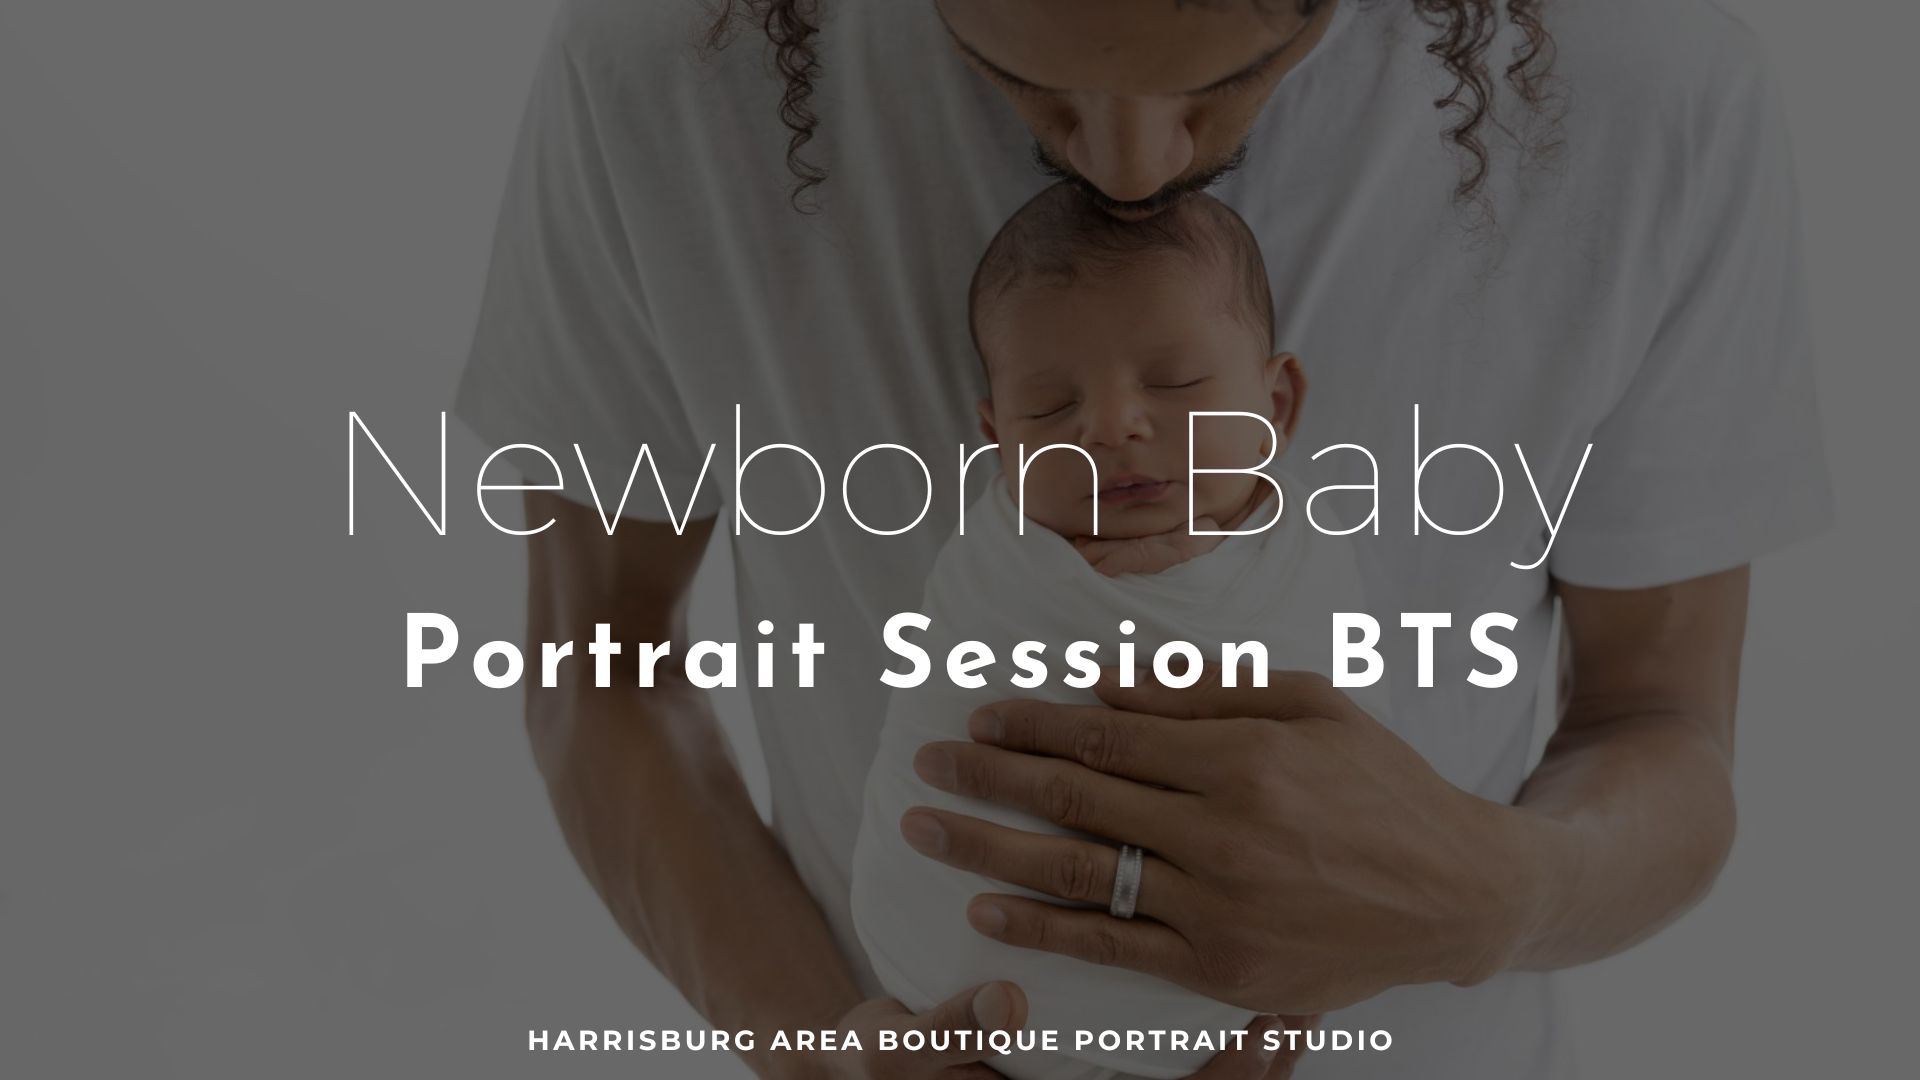 newborn baby portrait session bts featured